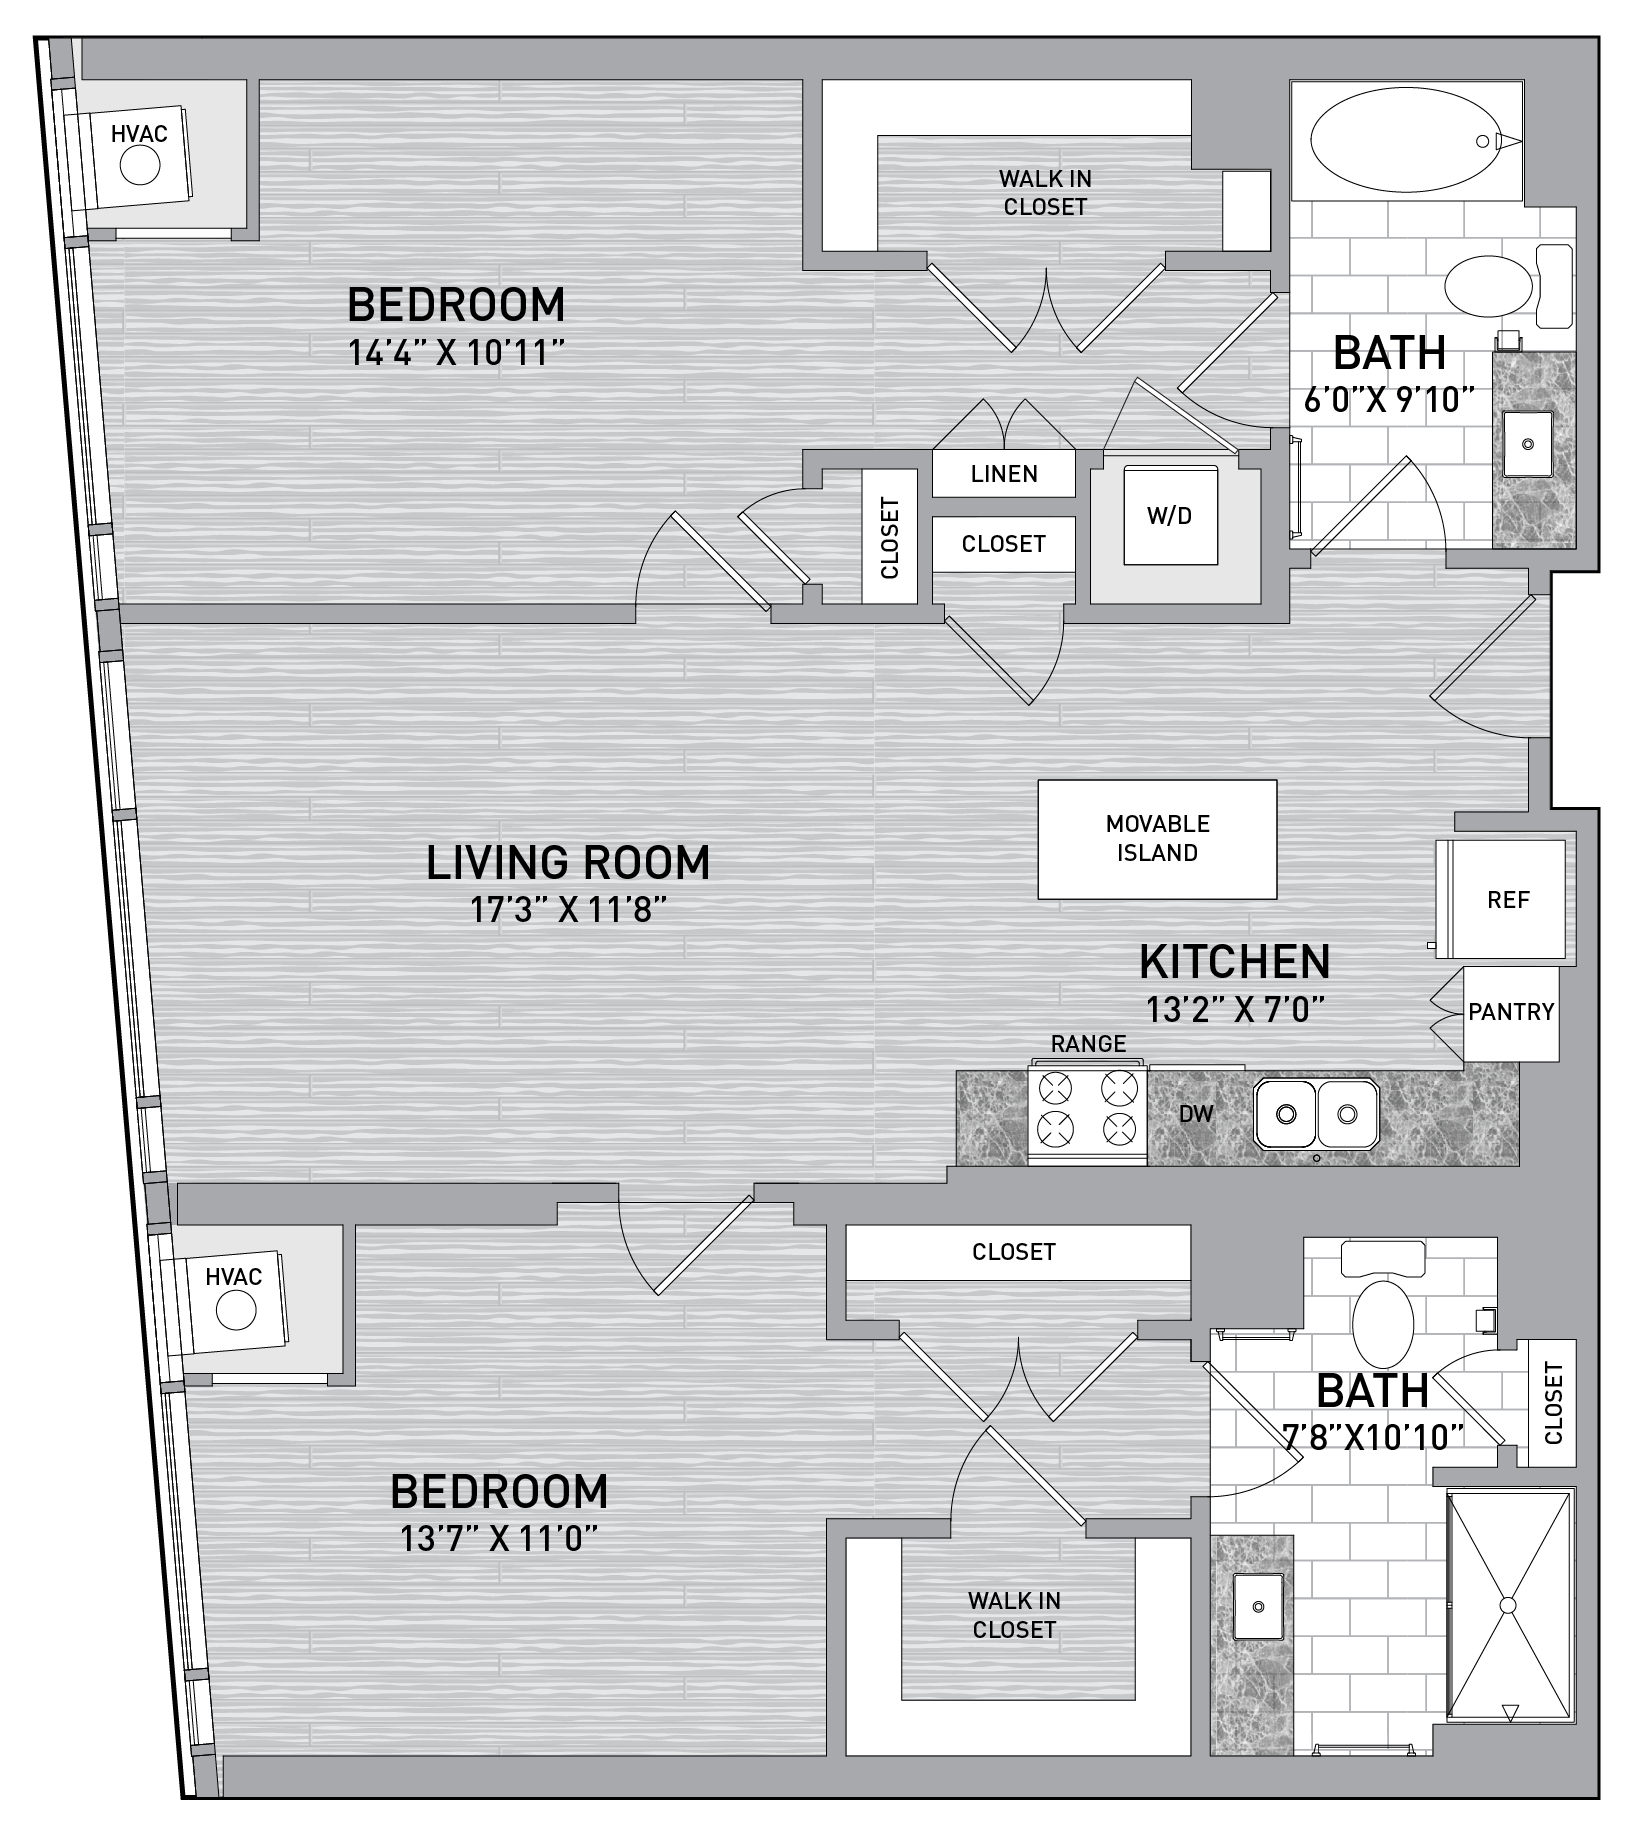 floorplan image of unit id 0822